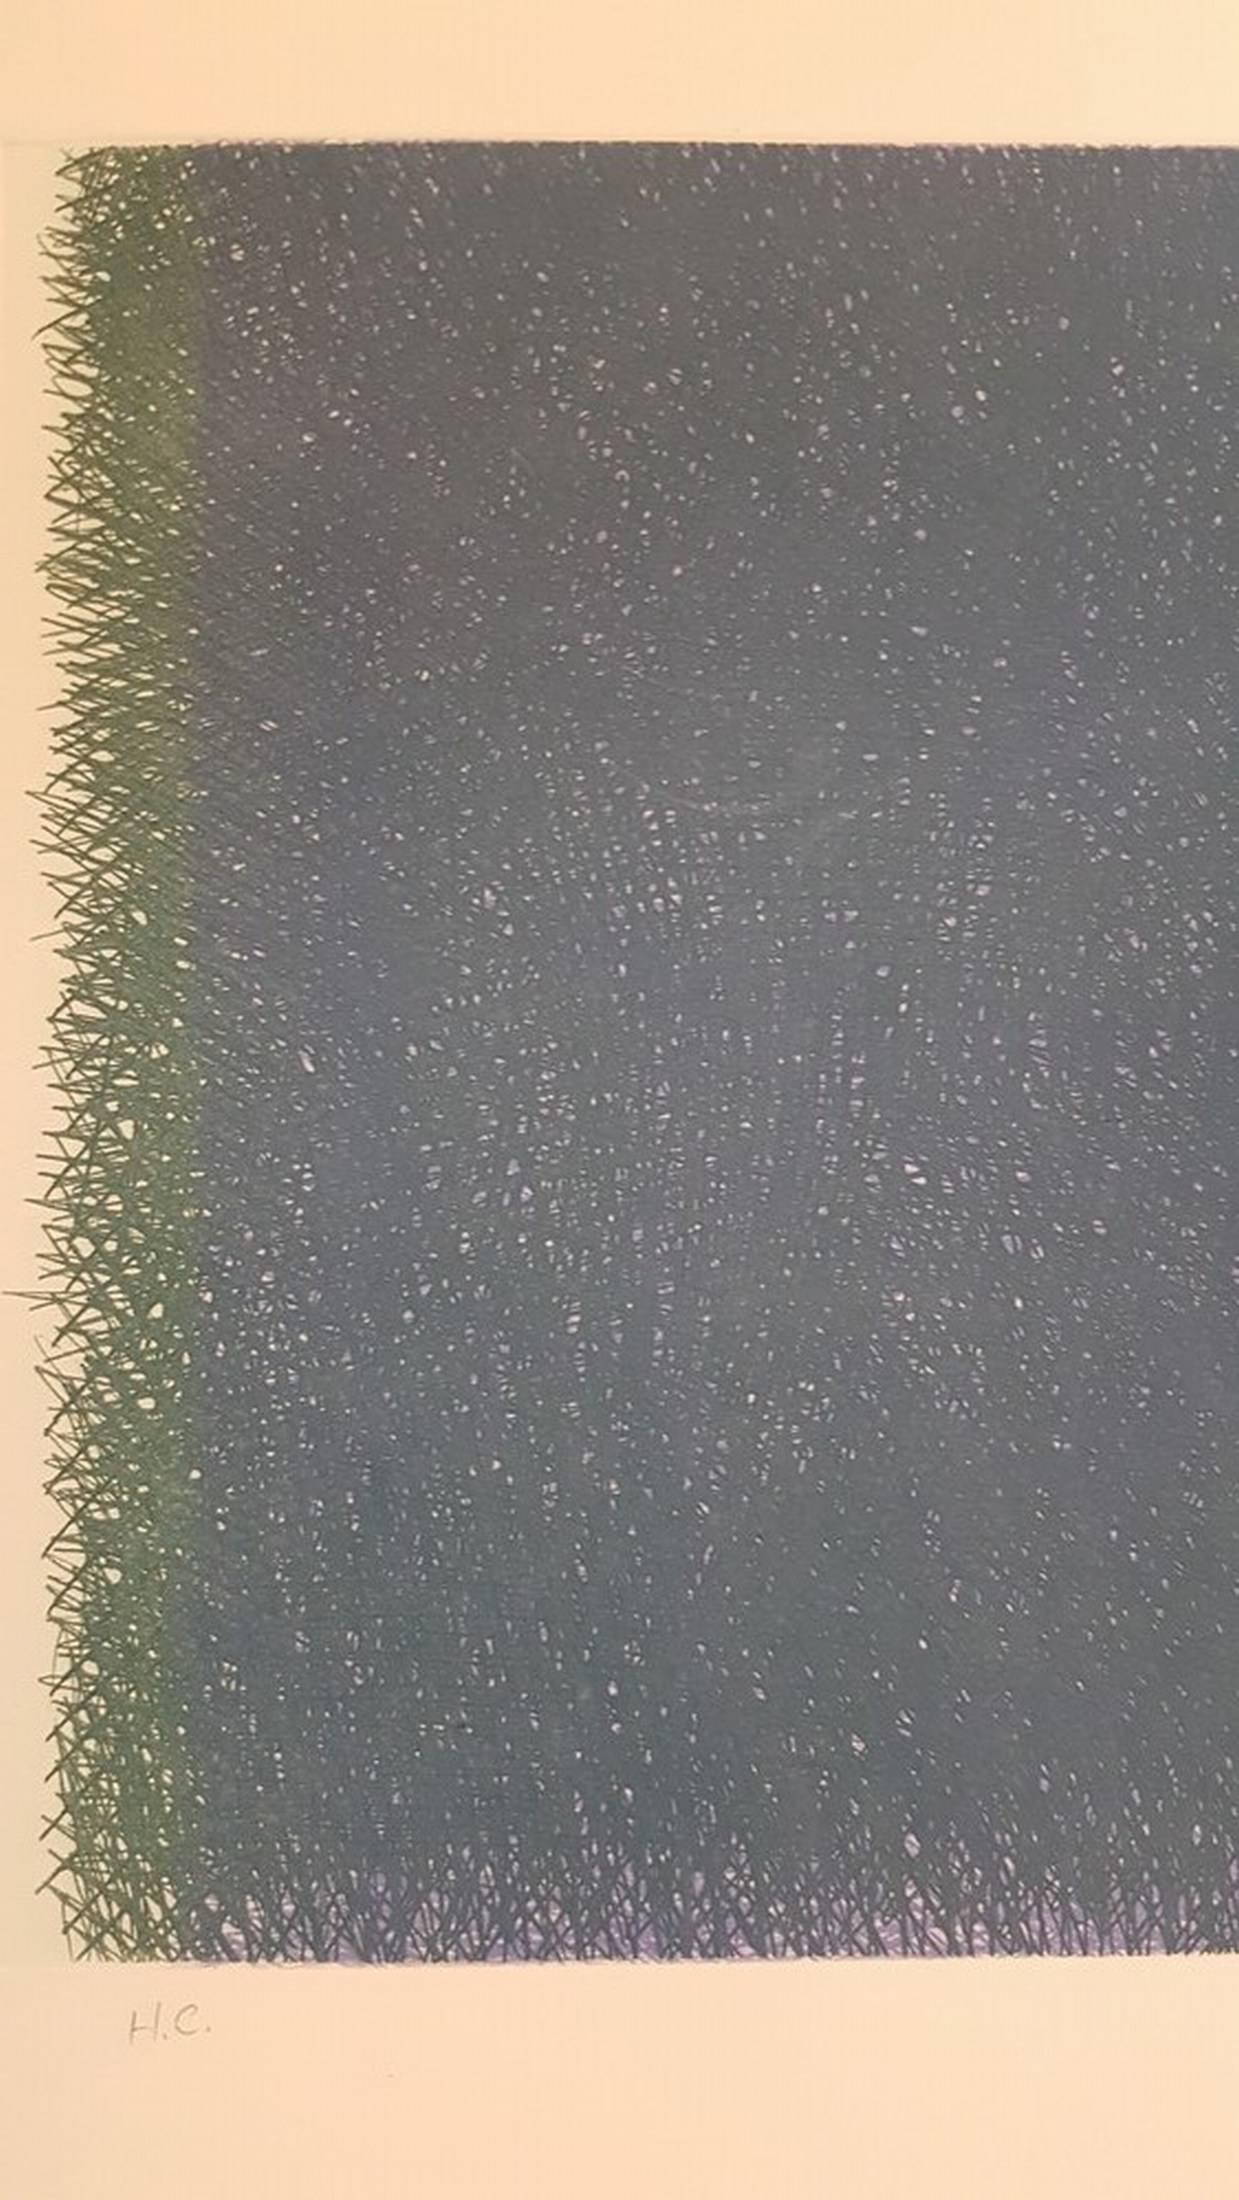 Composición, (in Grün/Blau)
Farbradierung
jahr: 1980
handschriftlich signiert, datiert und beschriftet
Ausgabe: H.C.
Größe: 12,3 × 24,8 auf 33,3 × 27,3 Zoll
COA bereitgestellt

Leben und Werk von Joan Hernández Pijuan erregen das Interesse von